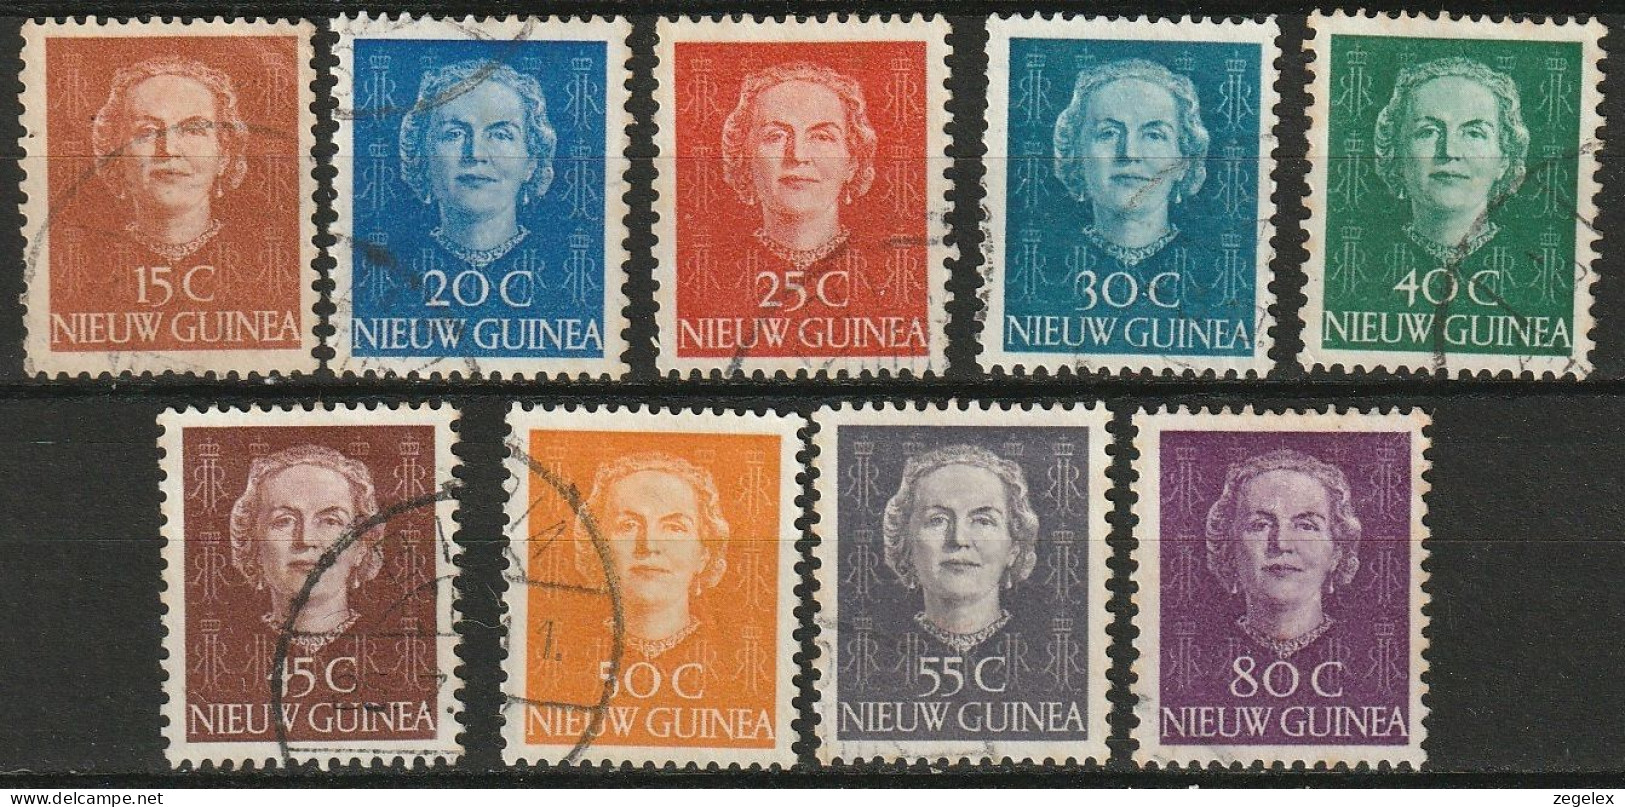 Nederlands Nieuw Guinea 1950, Koningin Juliana NVPH 10-18 Gestempeld/used - Nederlands Nieuw-Guinea